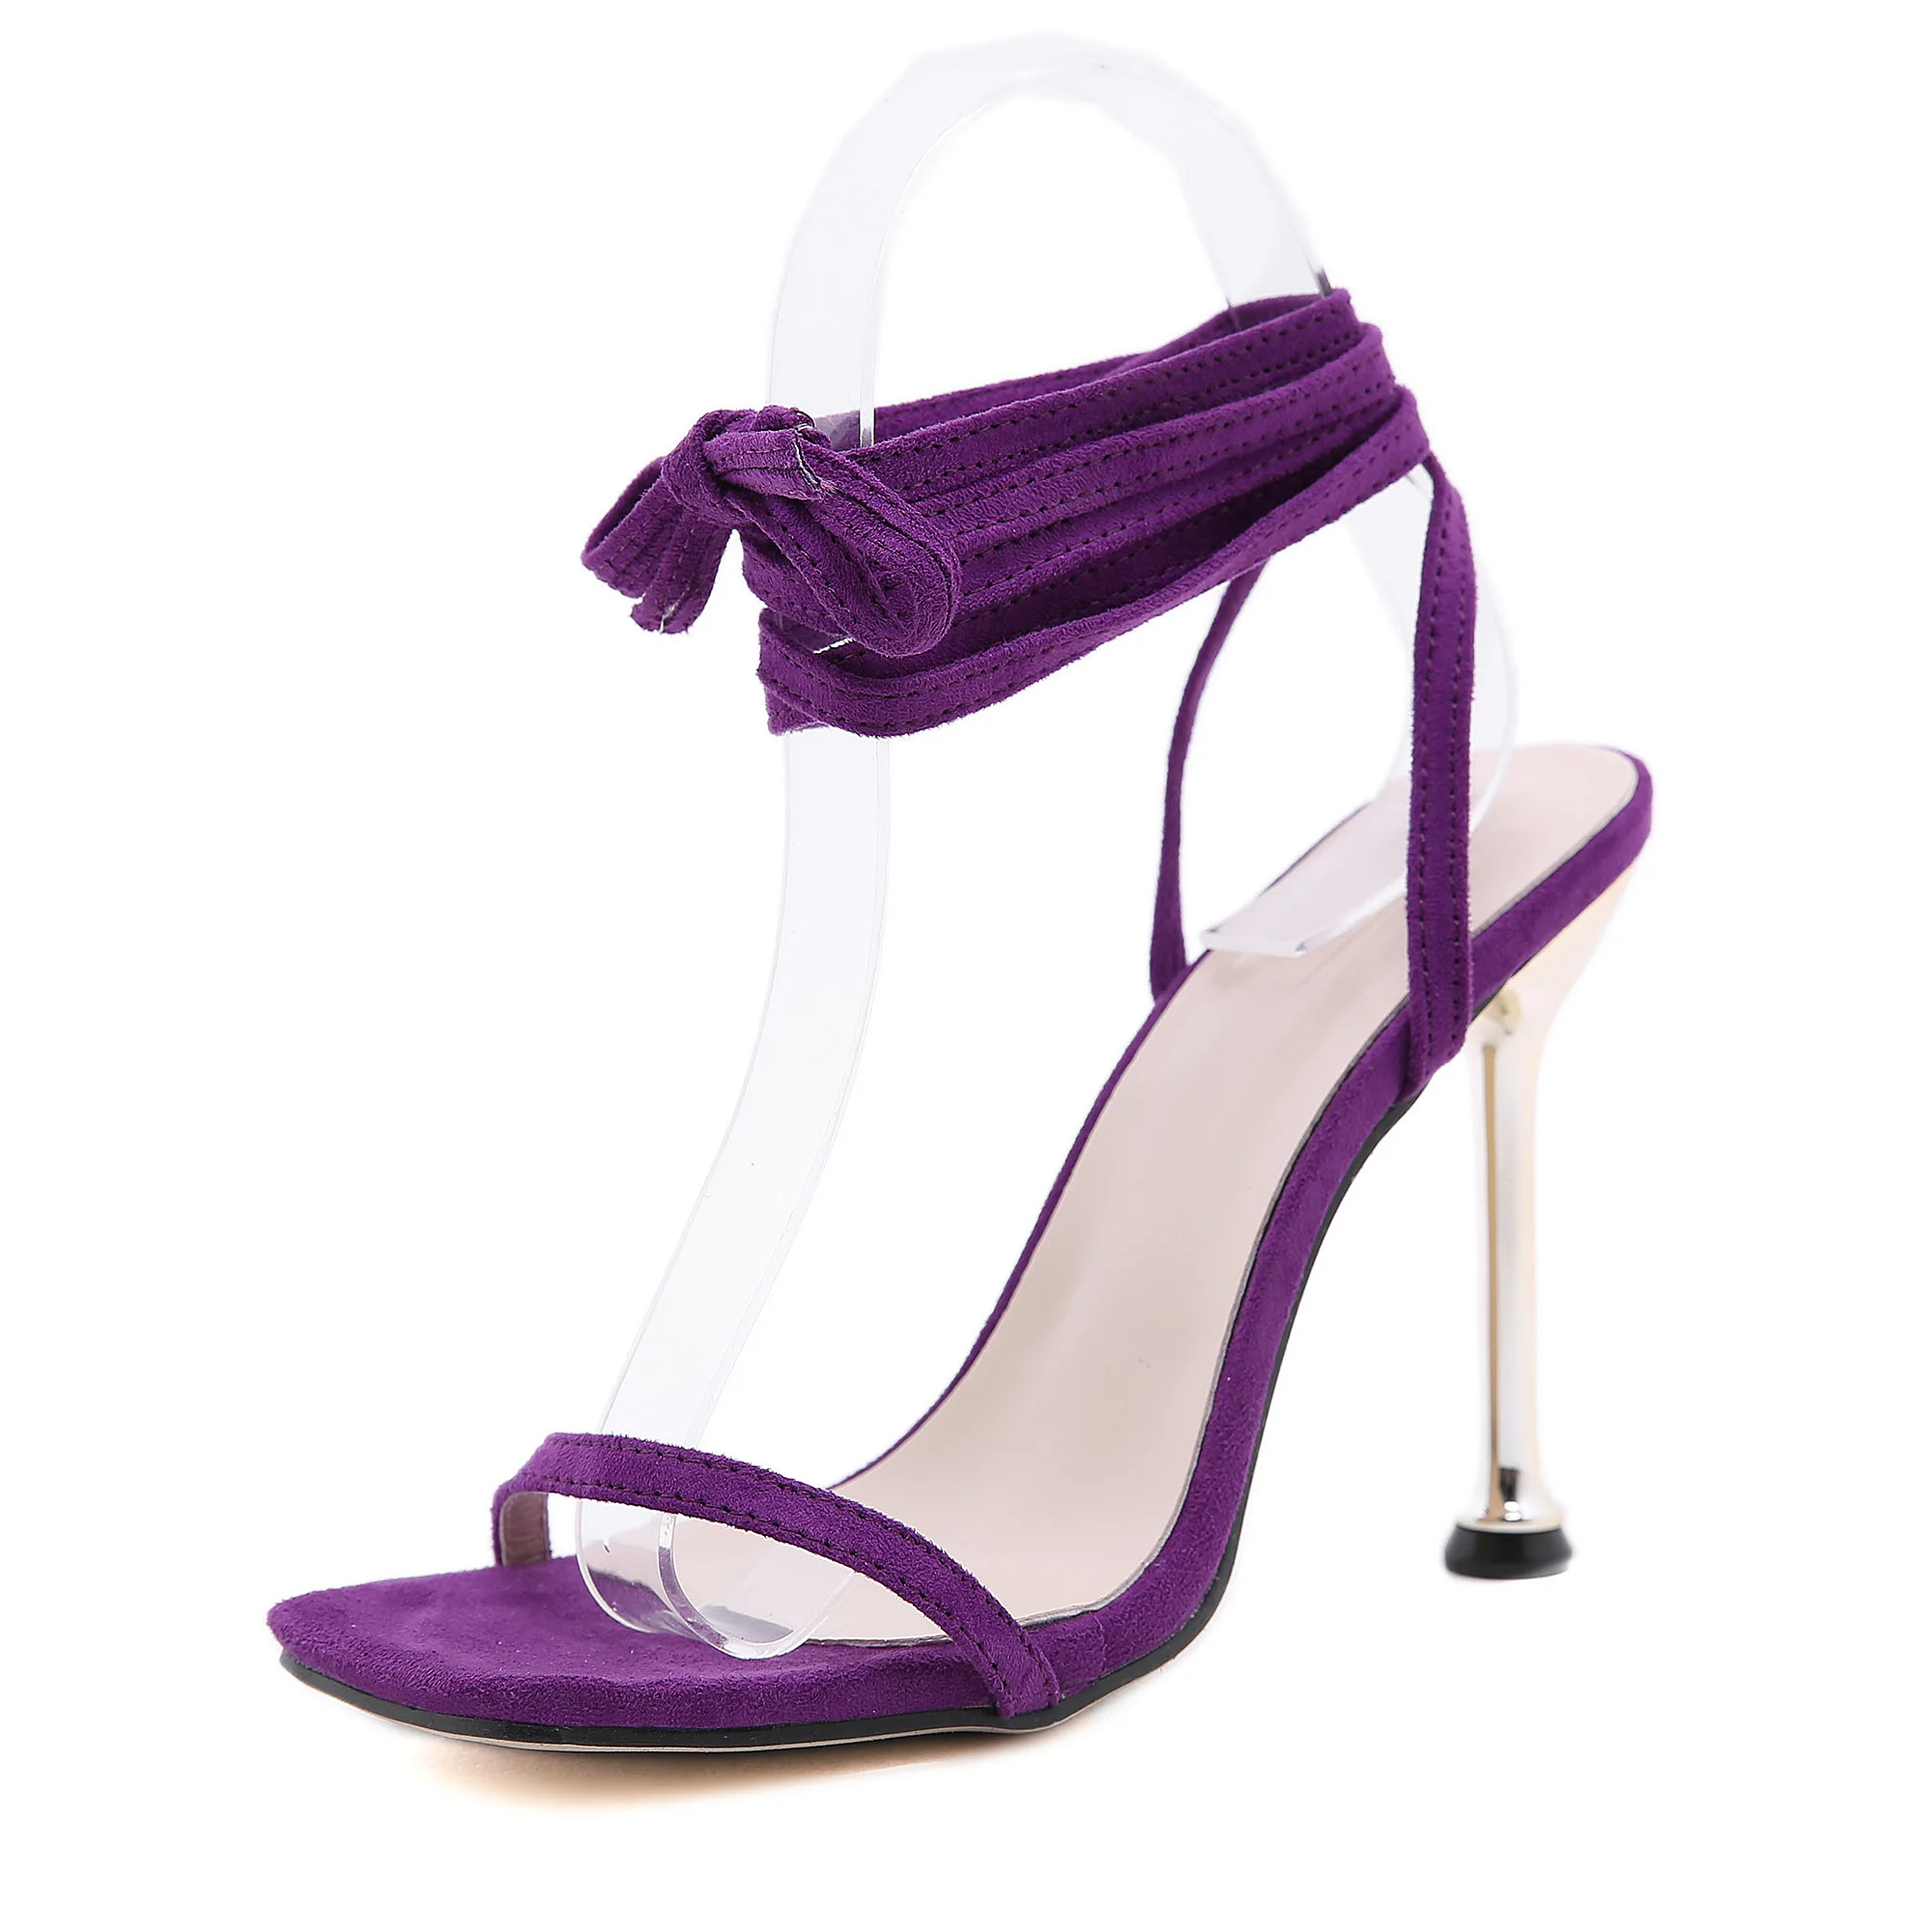 

Purple Estilo De Tacones Square Toe Thong Pink Sandals Ankle Lace up Strap Heels for Ladies, Purple, black